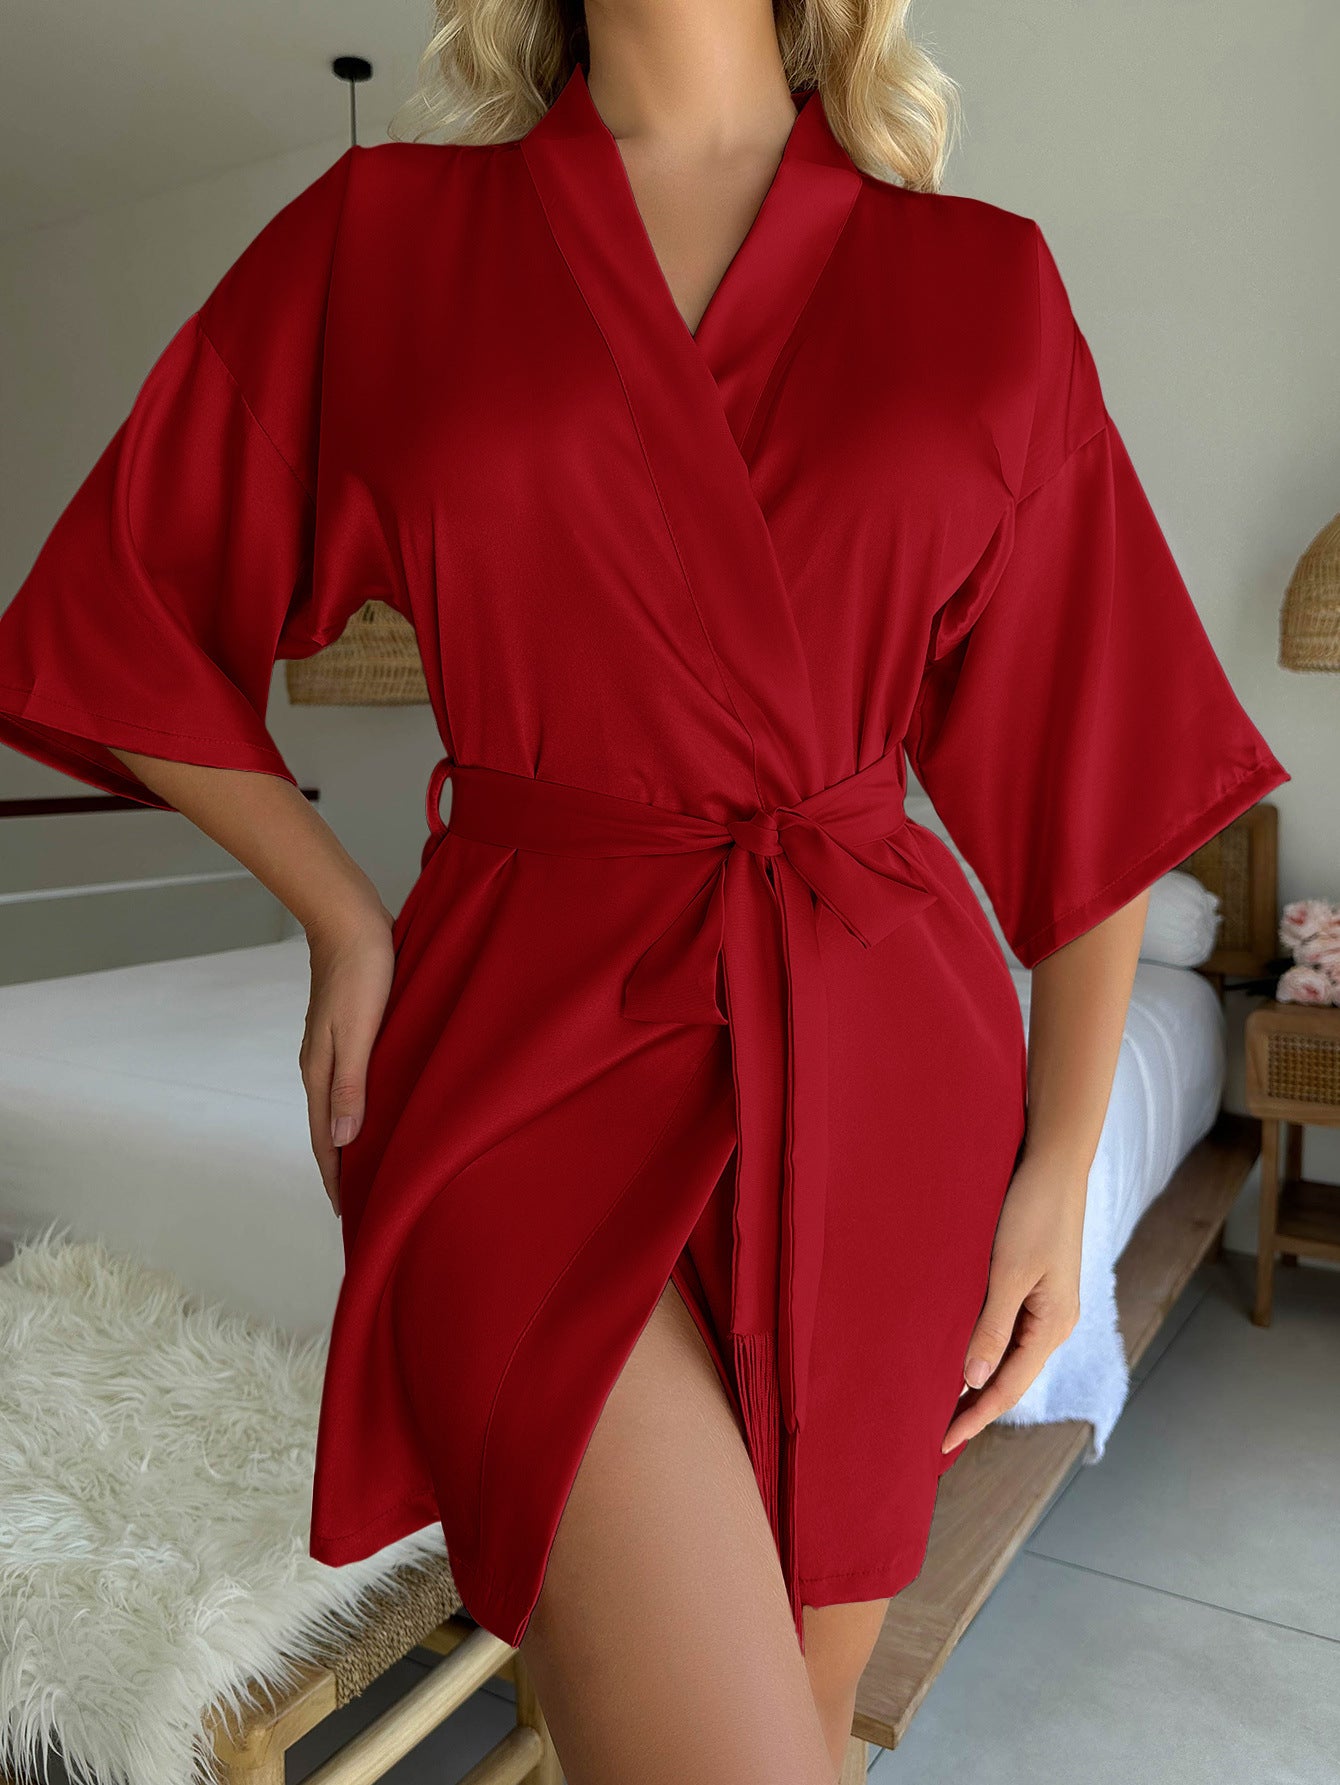 Red Short Cardigan Tie Tassel Bathrobe Sexy Pajamas